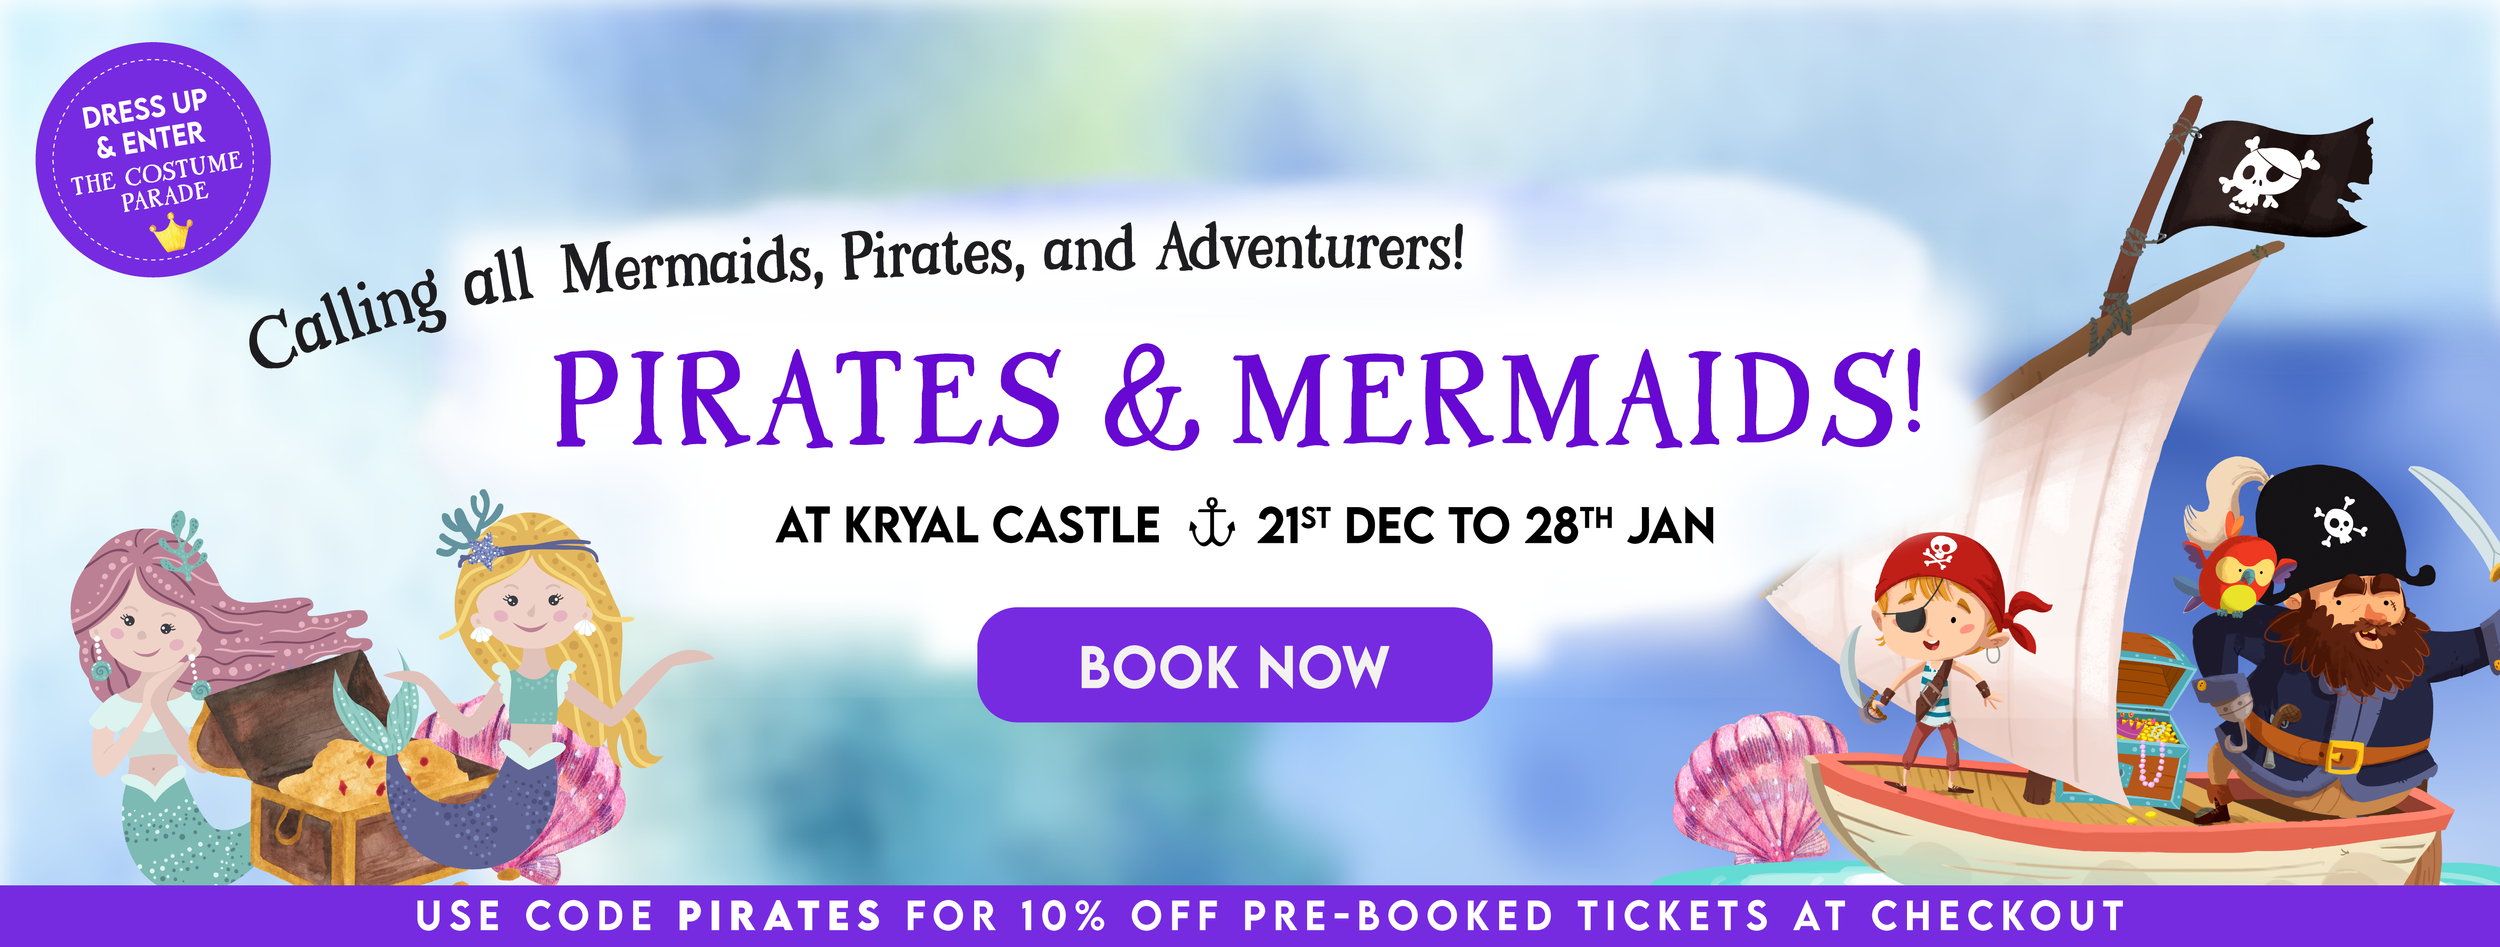 Pirates and Mermaids Kryal Castle